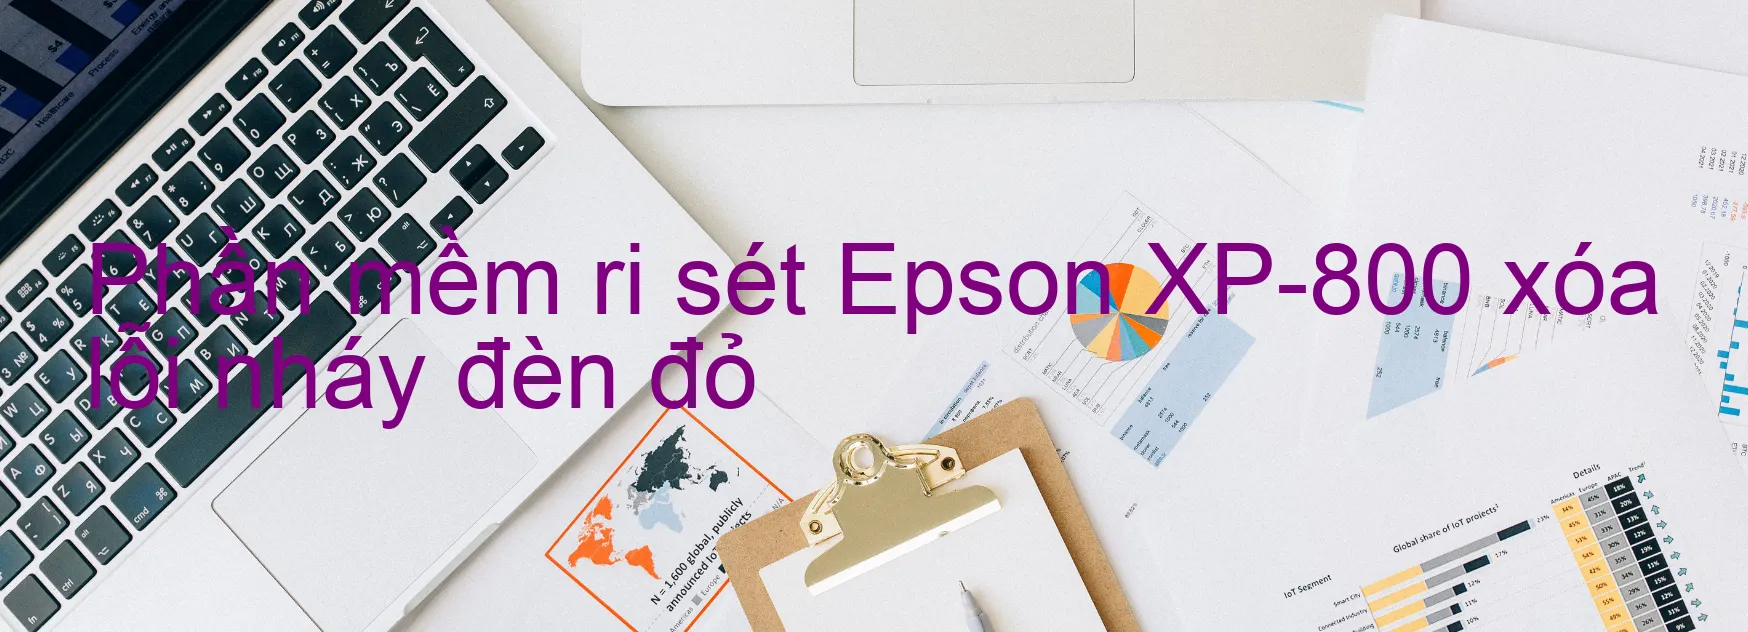 Phần mềm reset Epson XP-800 xóa lỗi nháy đèn đỏ